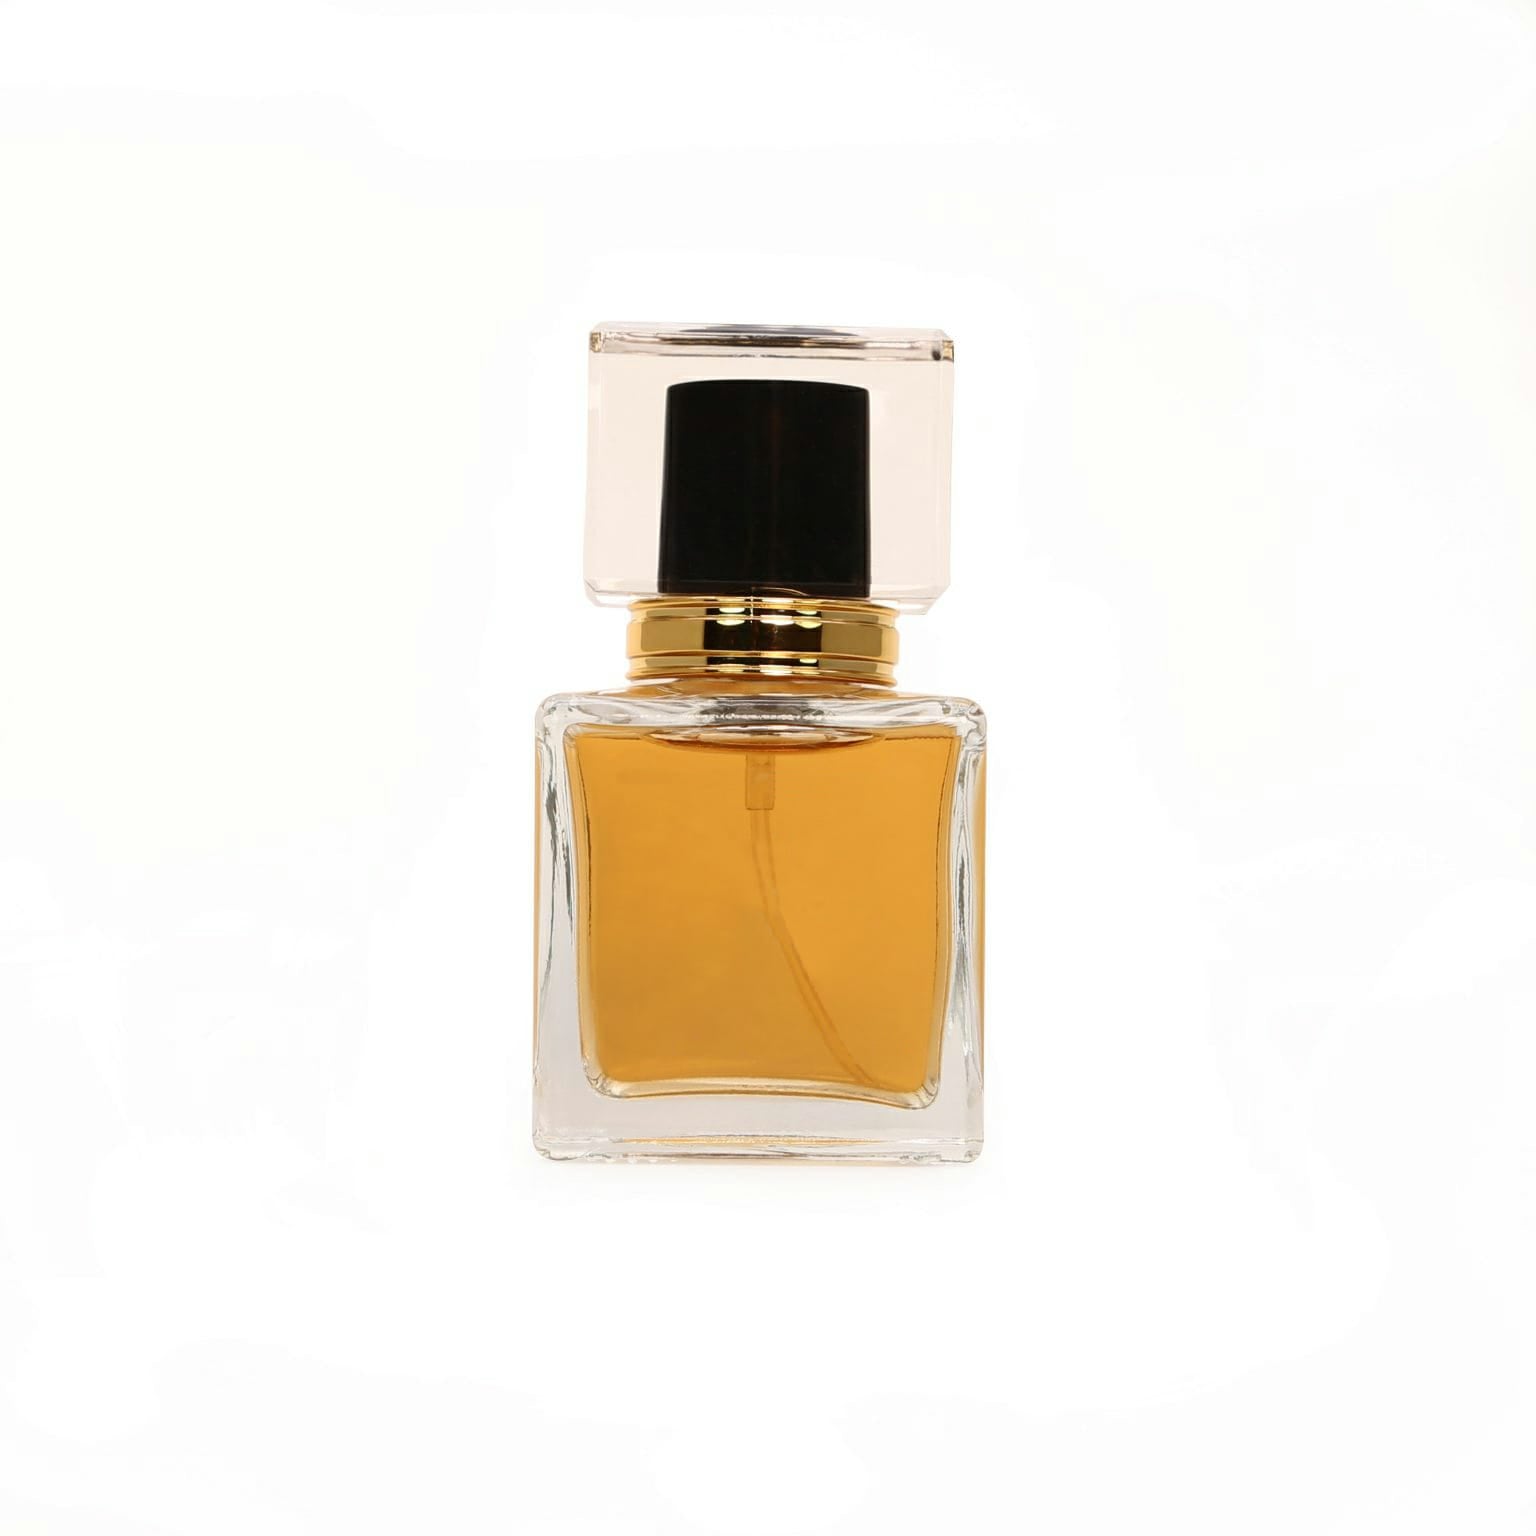 Mítico perfume Chanel Nº5 celebra su centenario – NotiCel – La